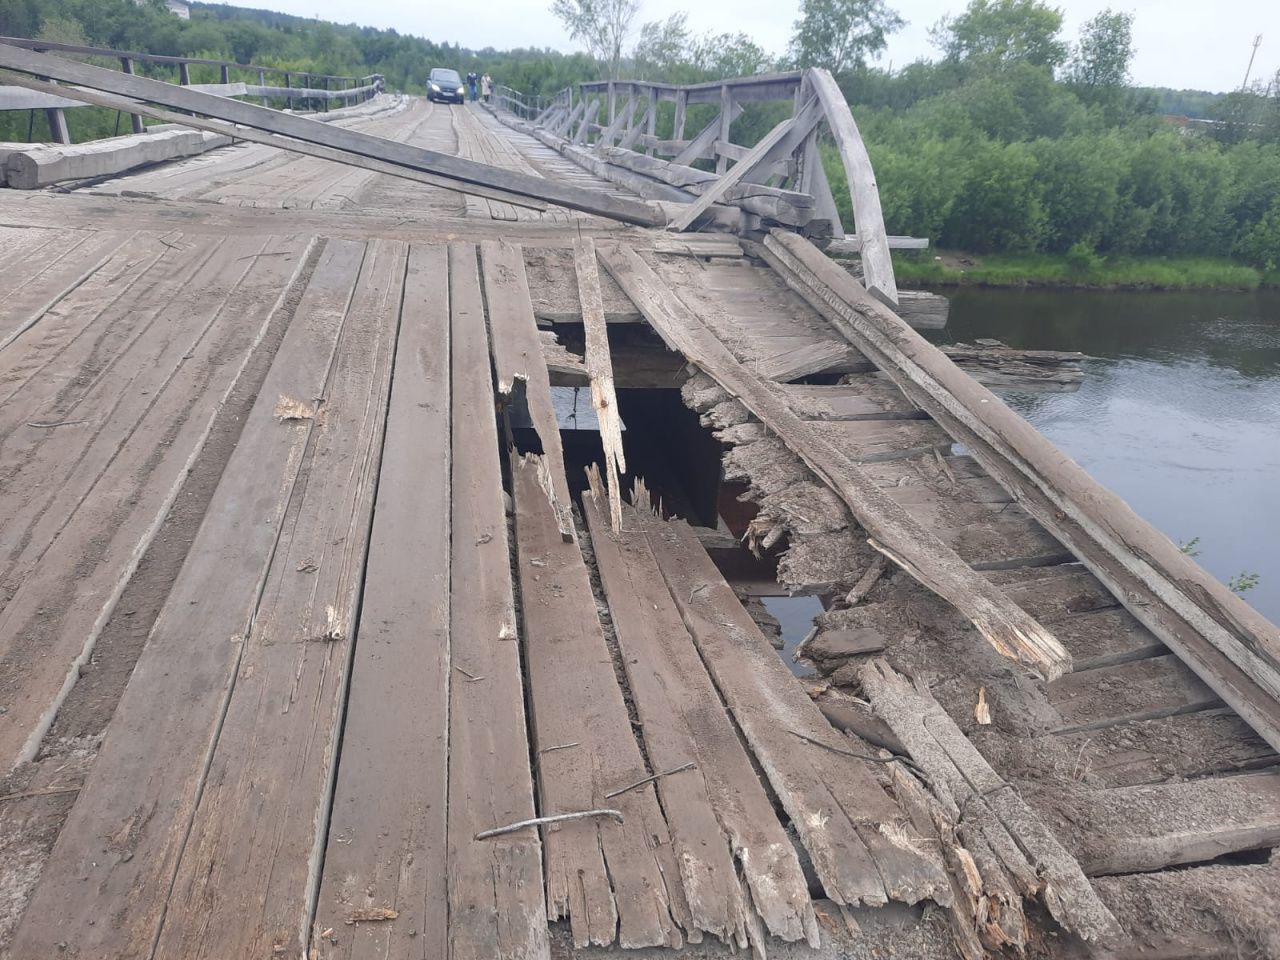 В Серове провалился въезд на мост. Мост люди ремонтировали самостоятельно четыре года назад